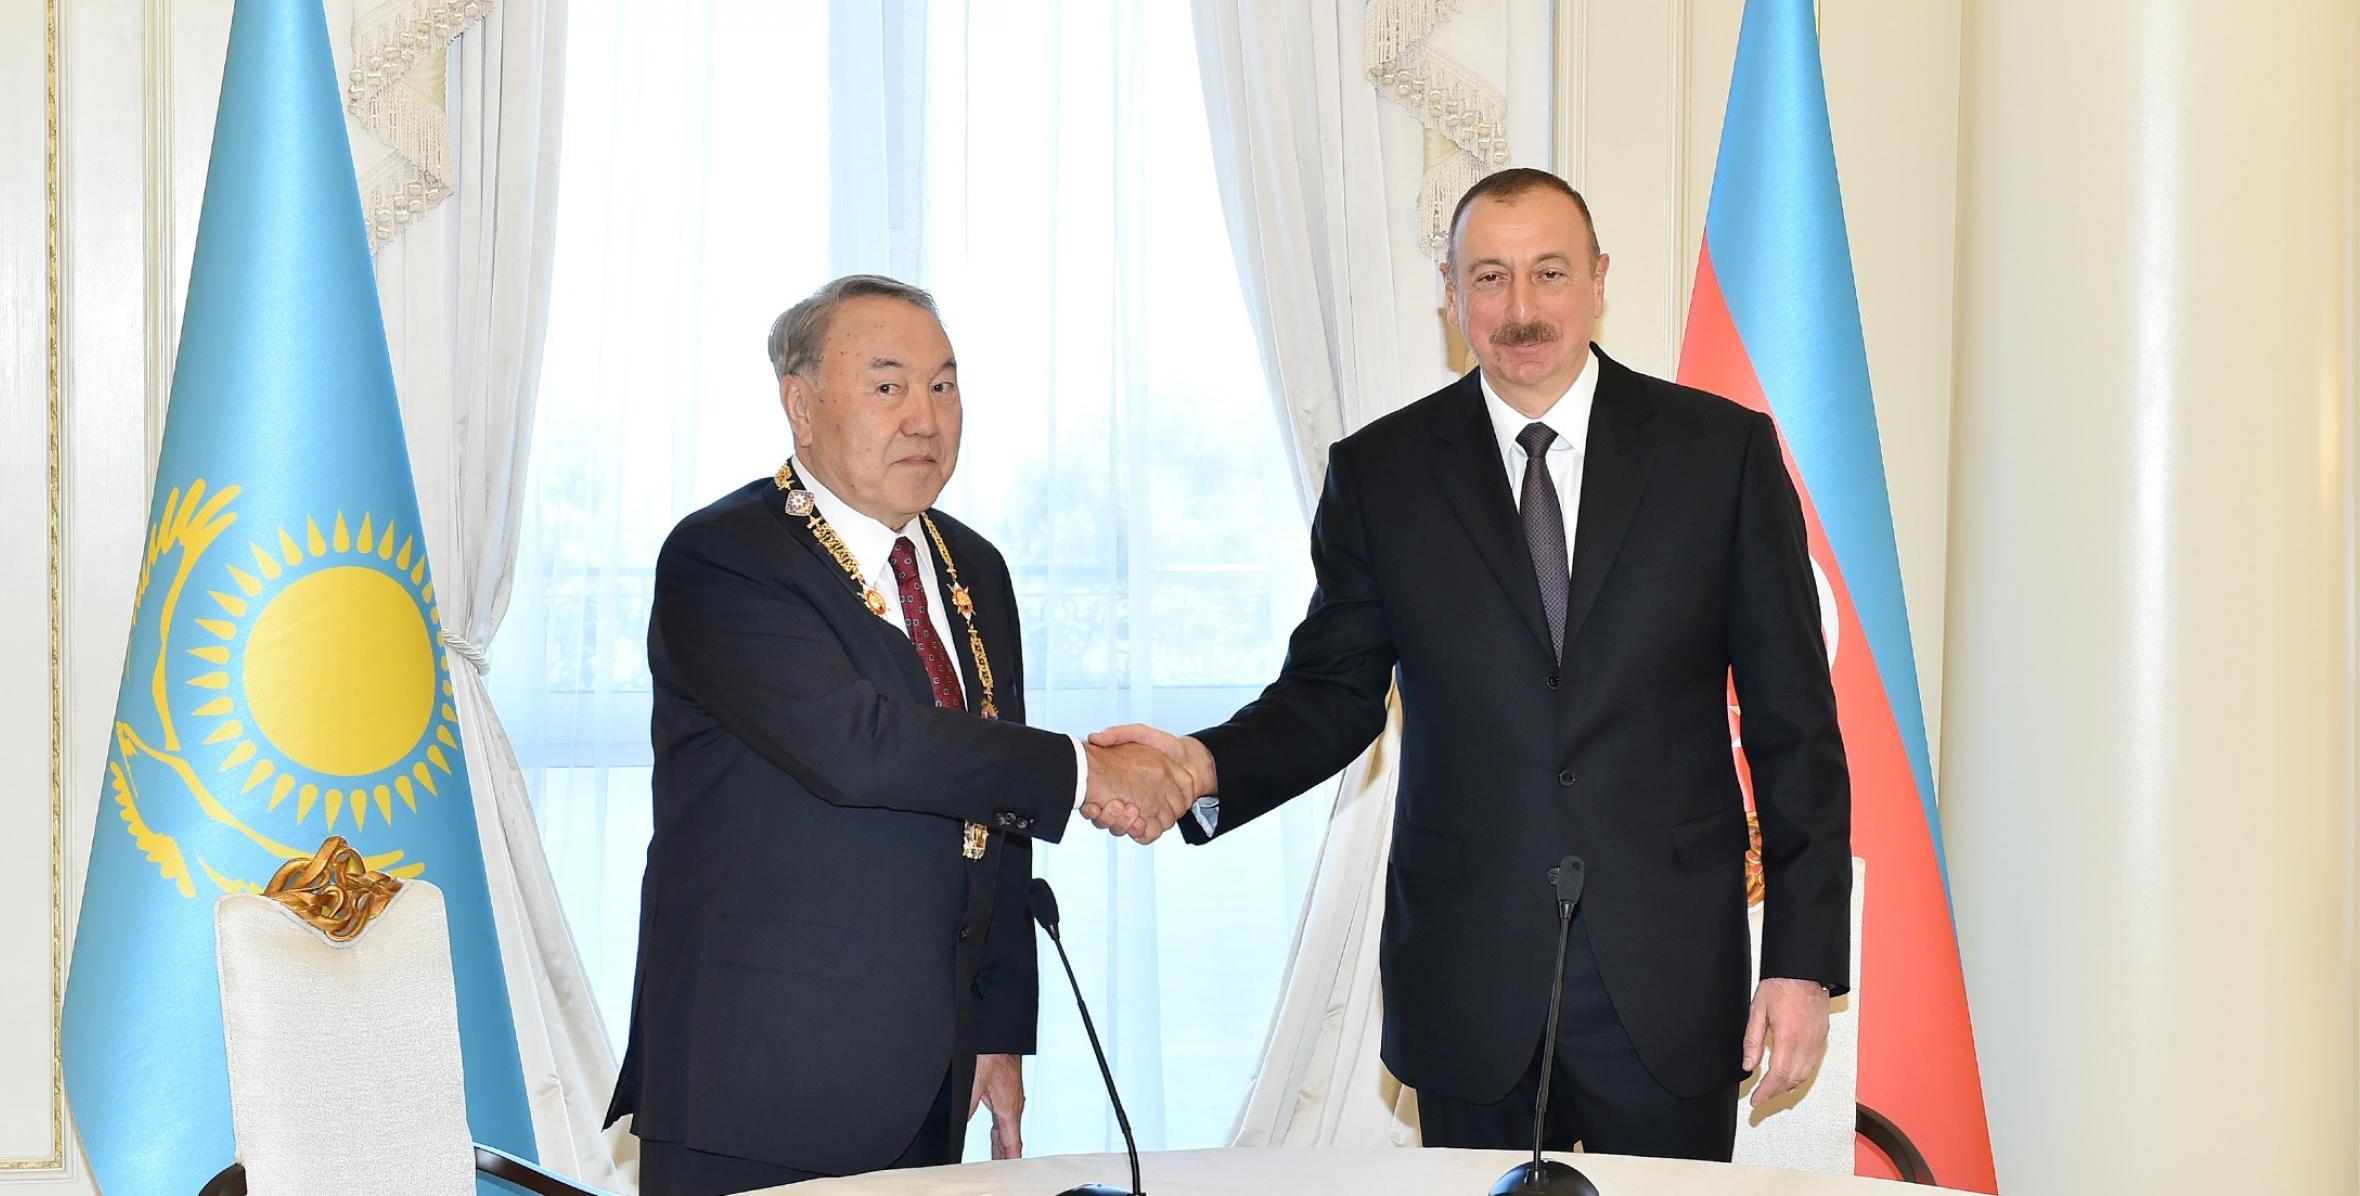 Qazaxıstan Prezidenti Nursultan Nazarbayevə “Heydər Əliyev” ordeni təqdim edilib